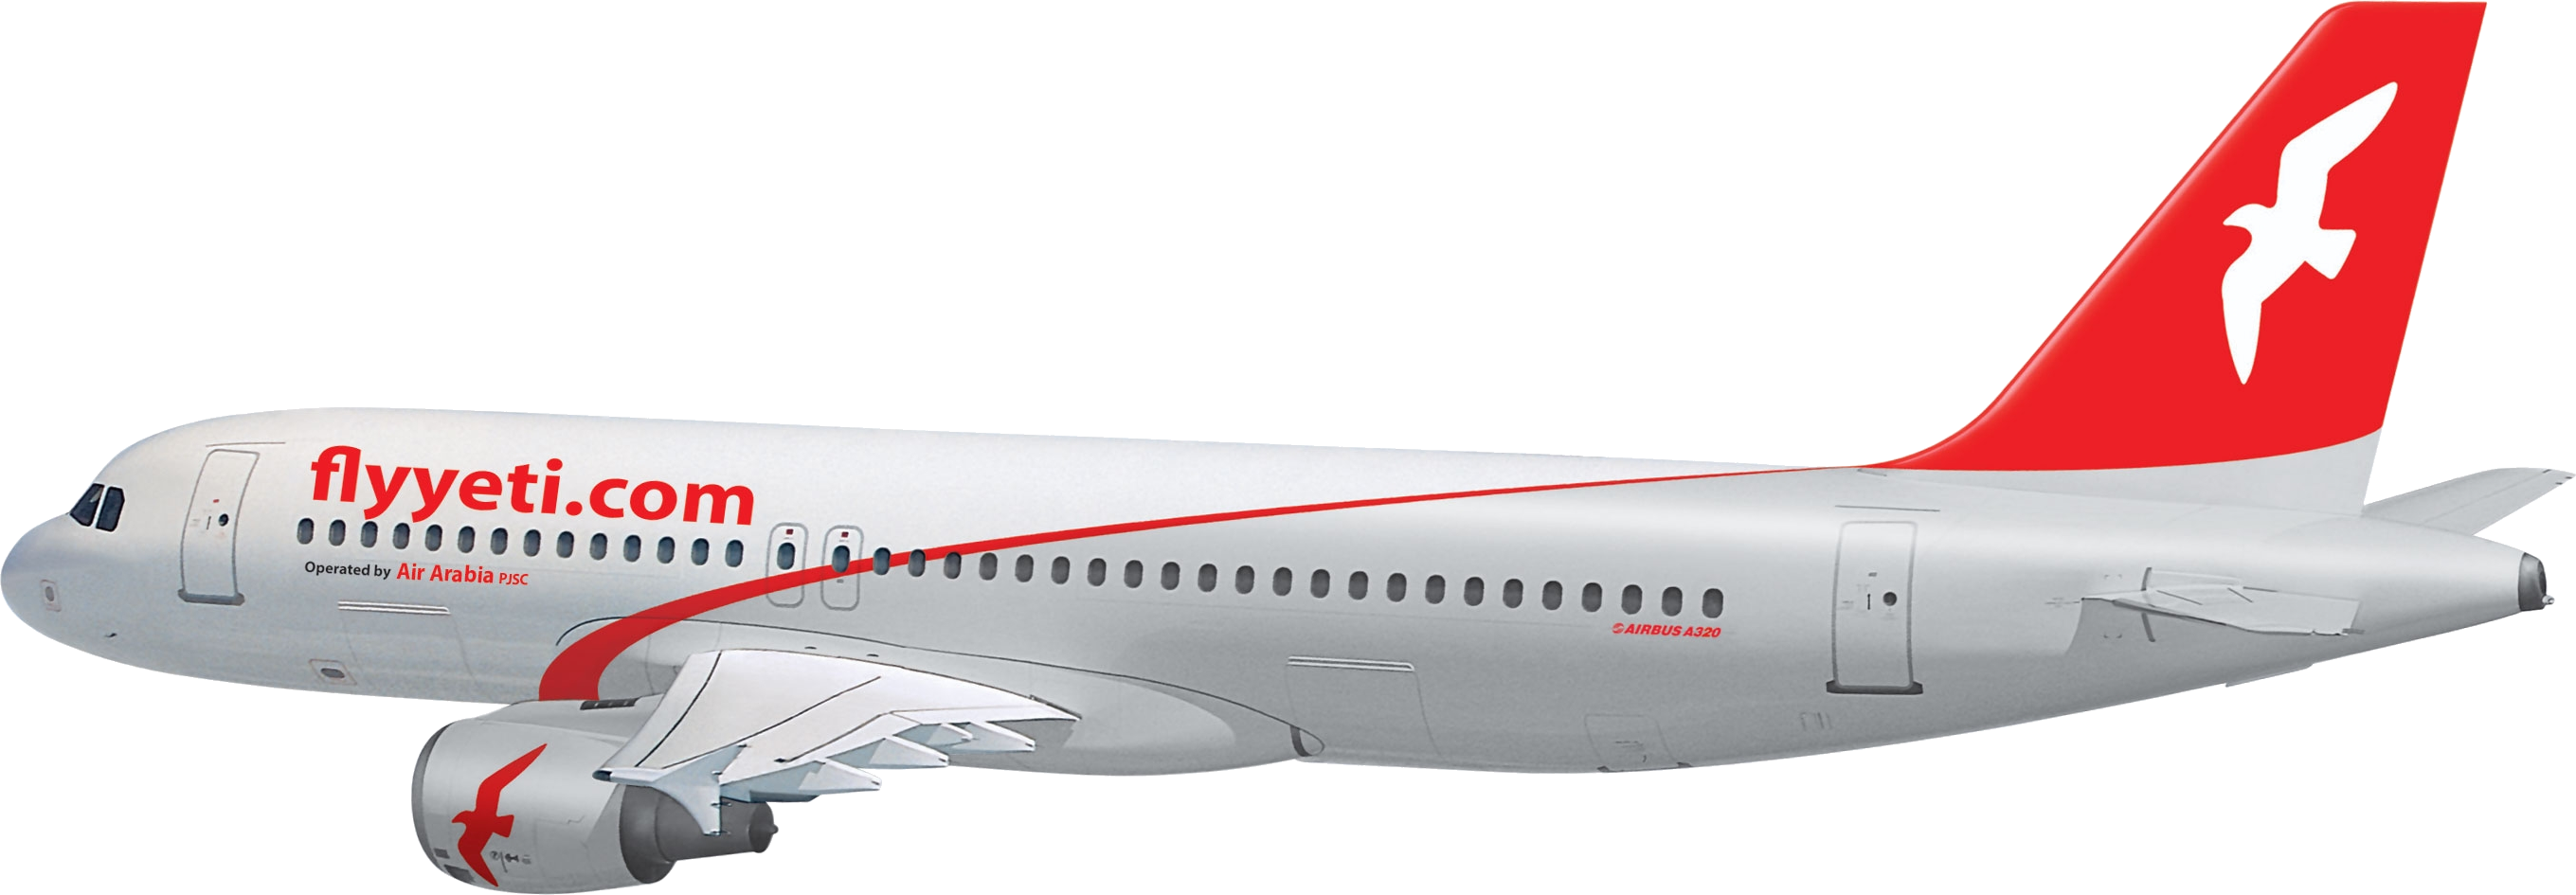 Modernes Flugzeughintergrund PNG-Bild